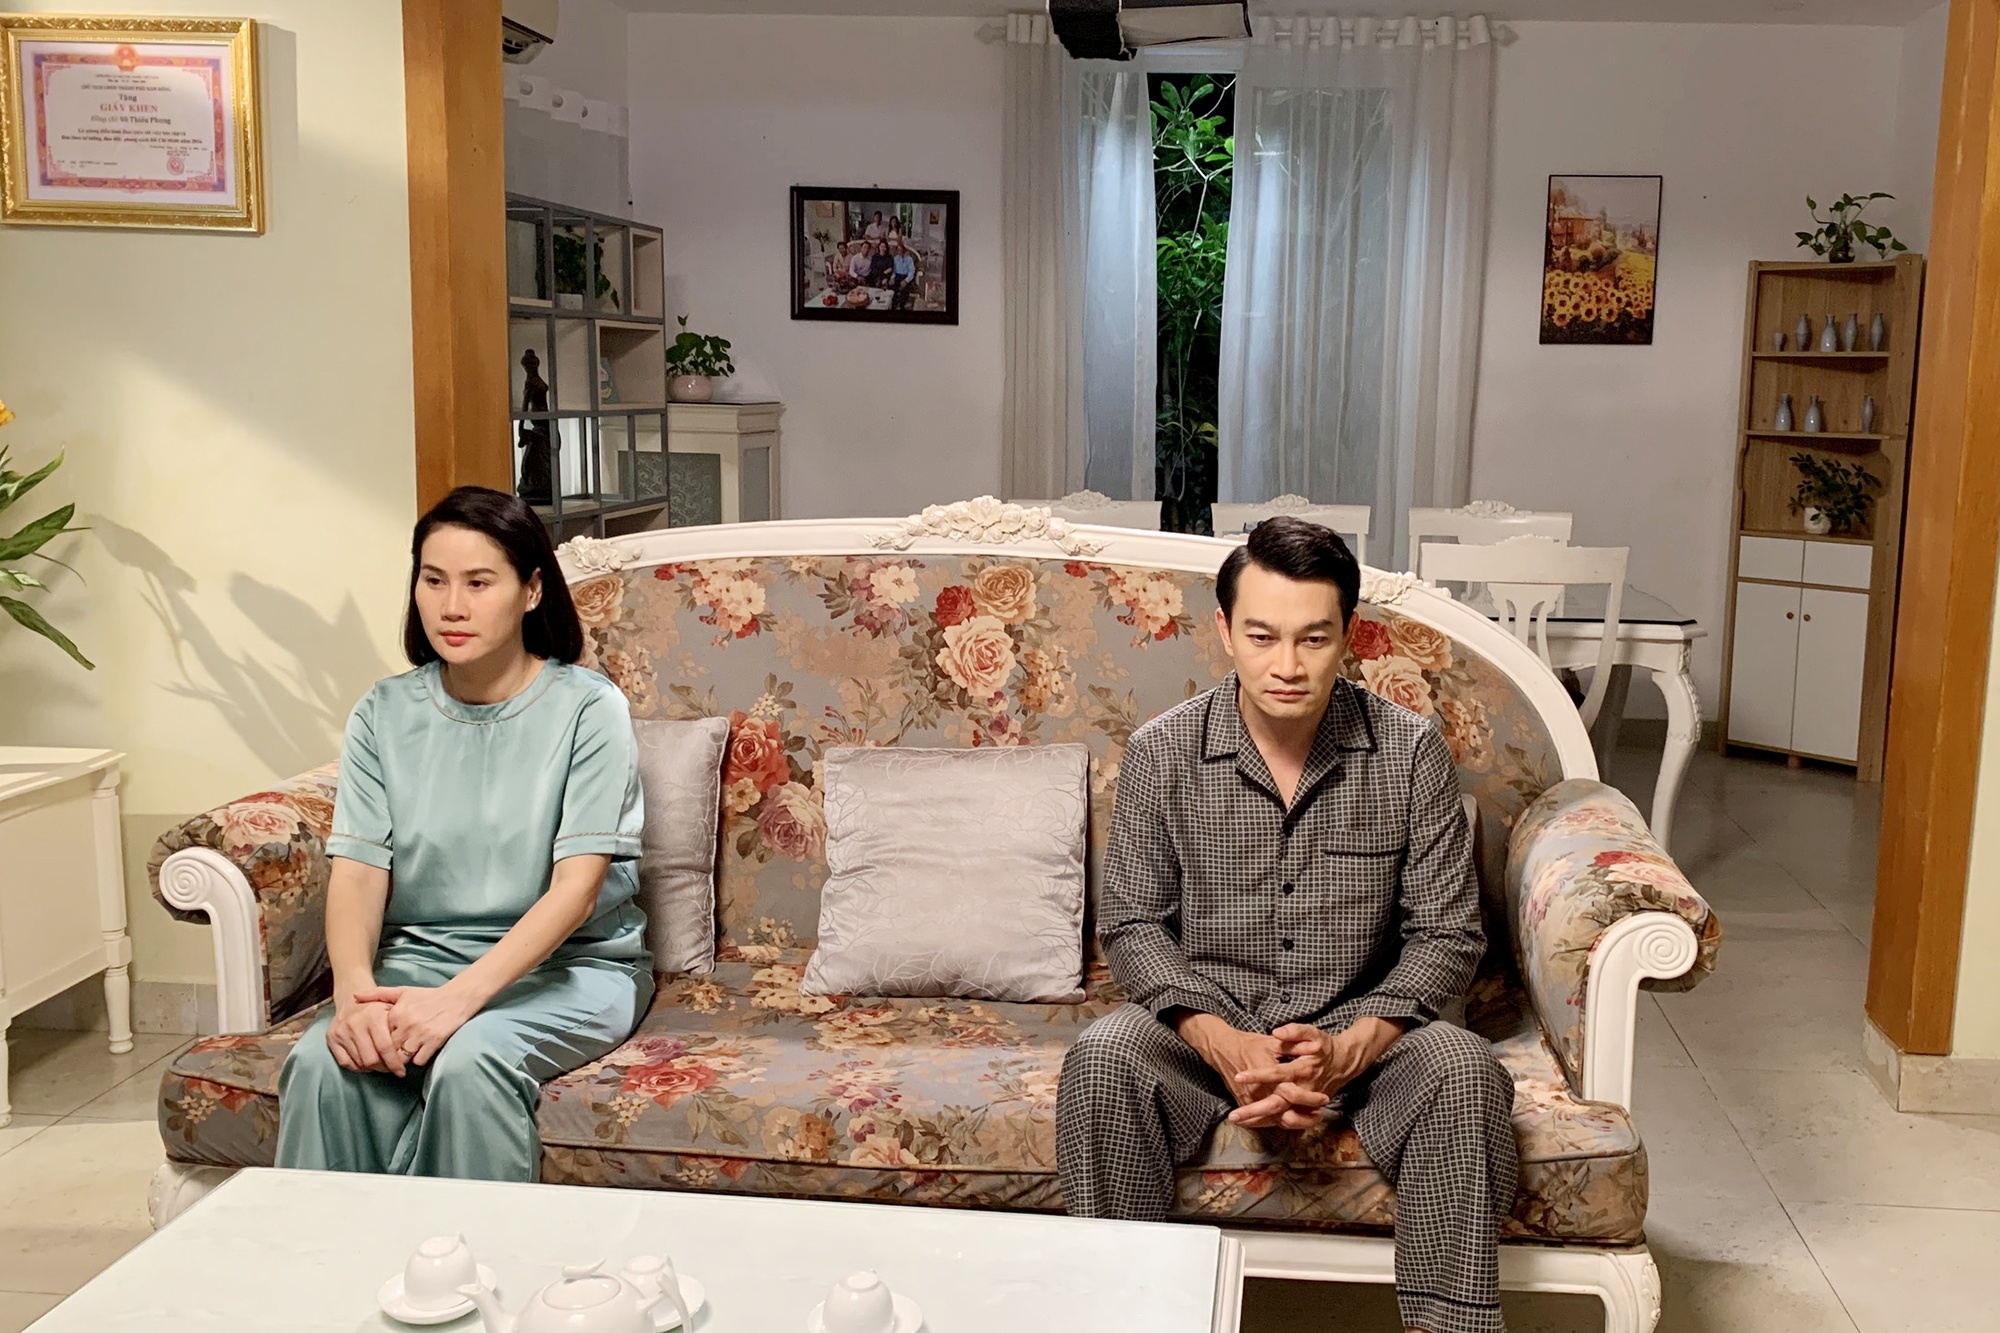 Phim Vợ quan và diễn viên Trương Minh Quốc Thái được Hội Điện ảnh bình chọn là tác phẩm và cá nhân xuất sắc của năm 